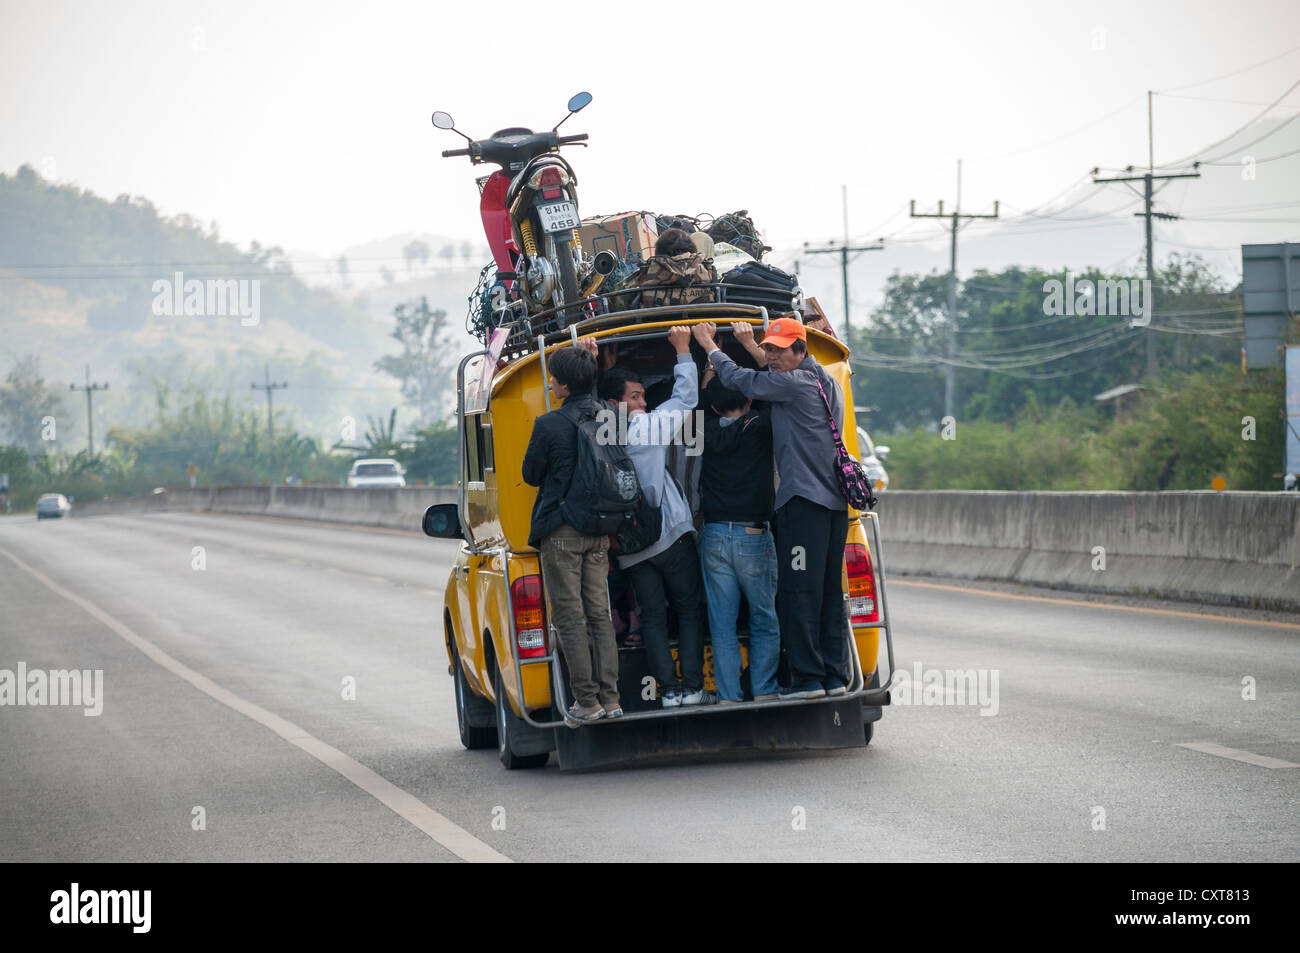 Überfüllte Anteil Taxi oder Songthaew auf einer Straße, geladen, ein Motorrad auf dem Dach, nördlichen Thailand, Thailand, Asien Stockfoto